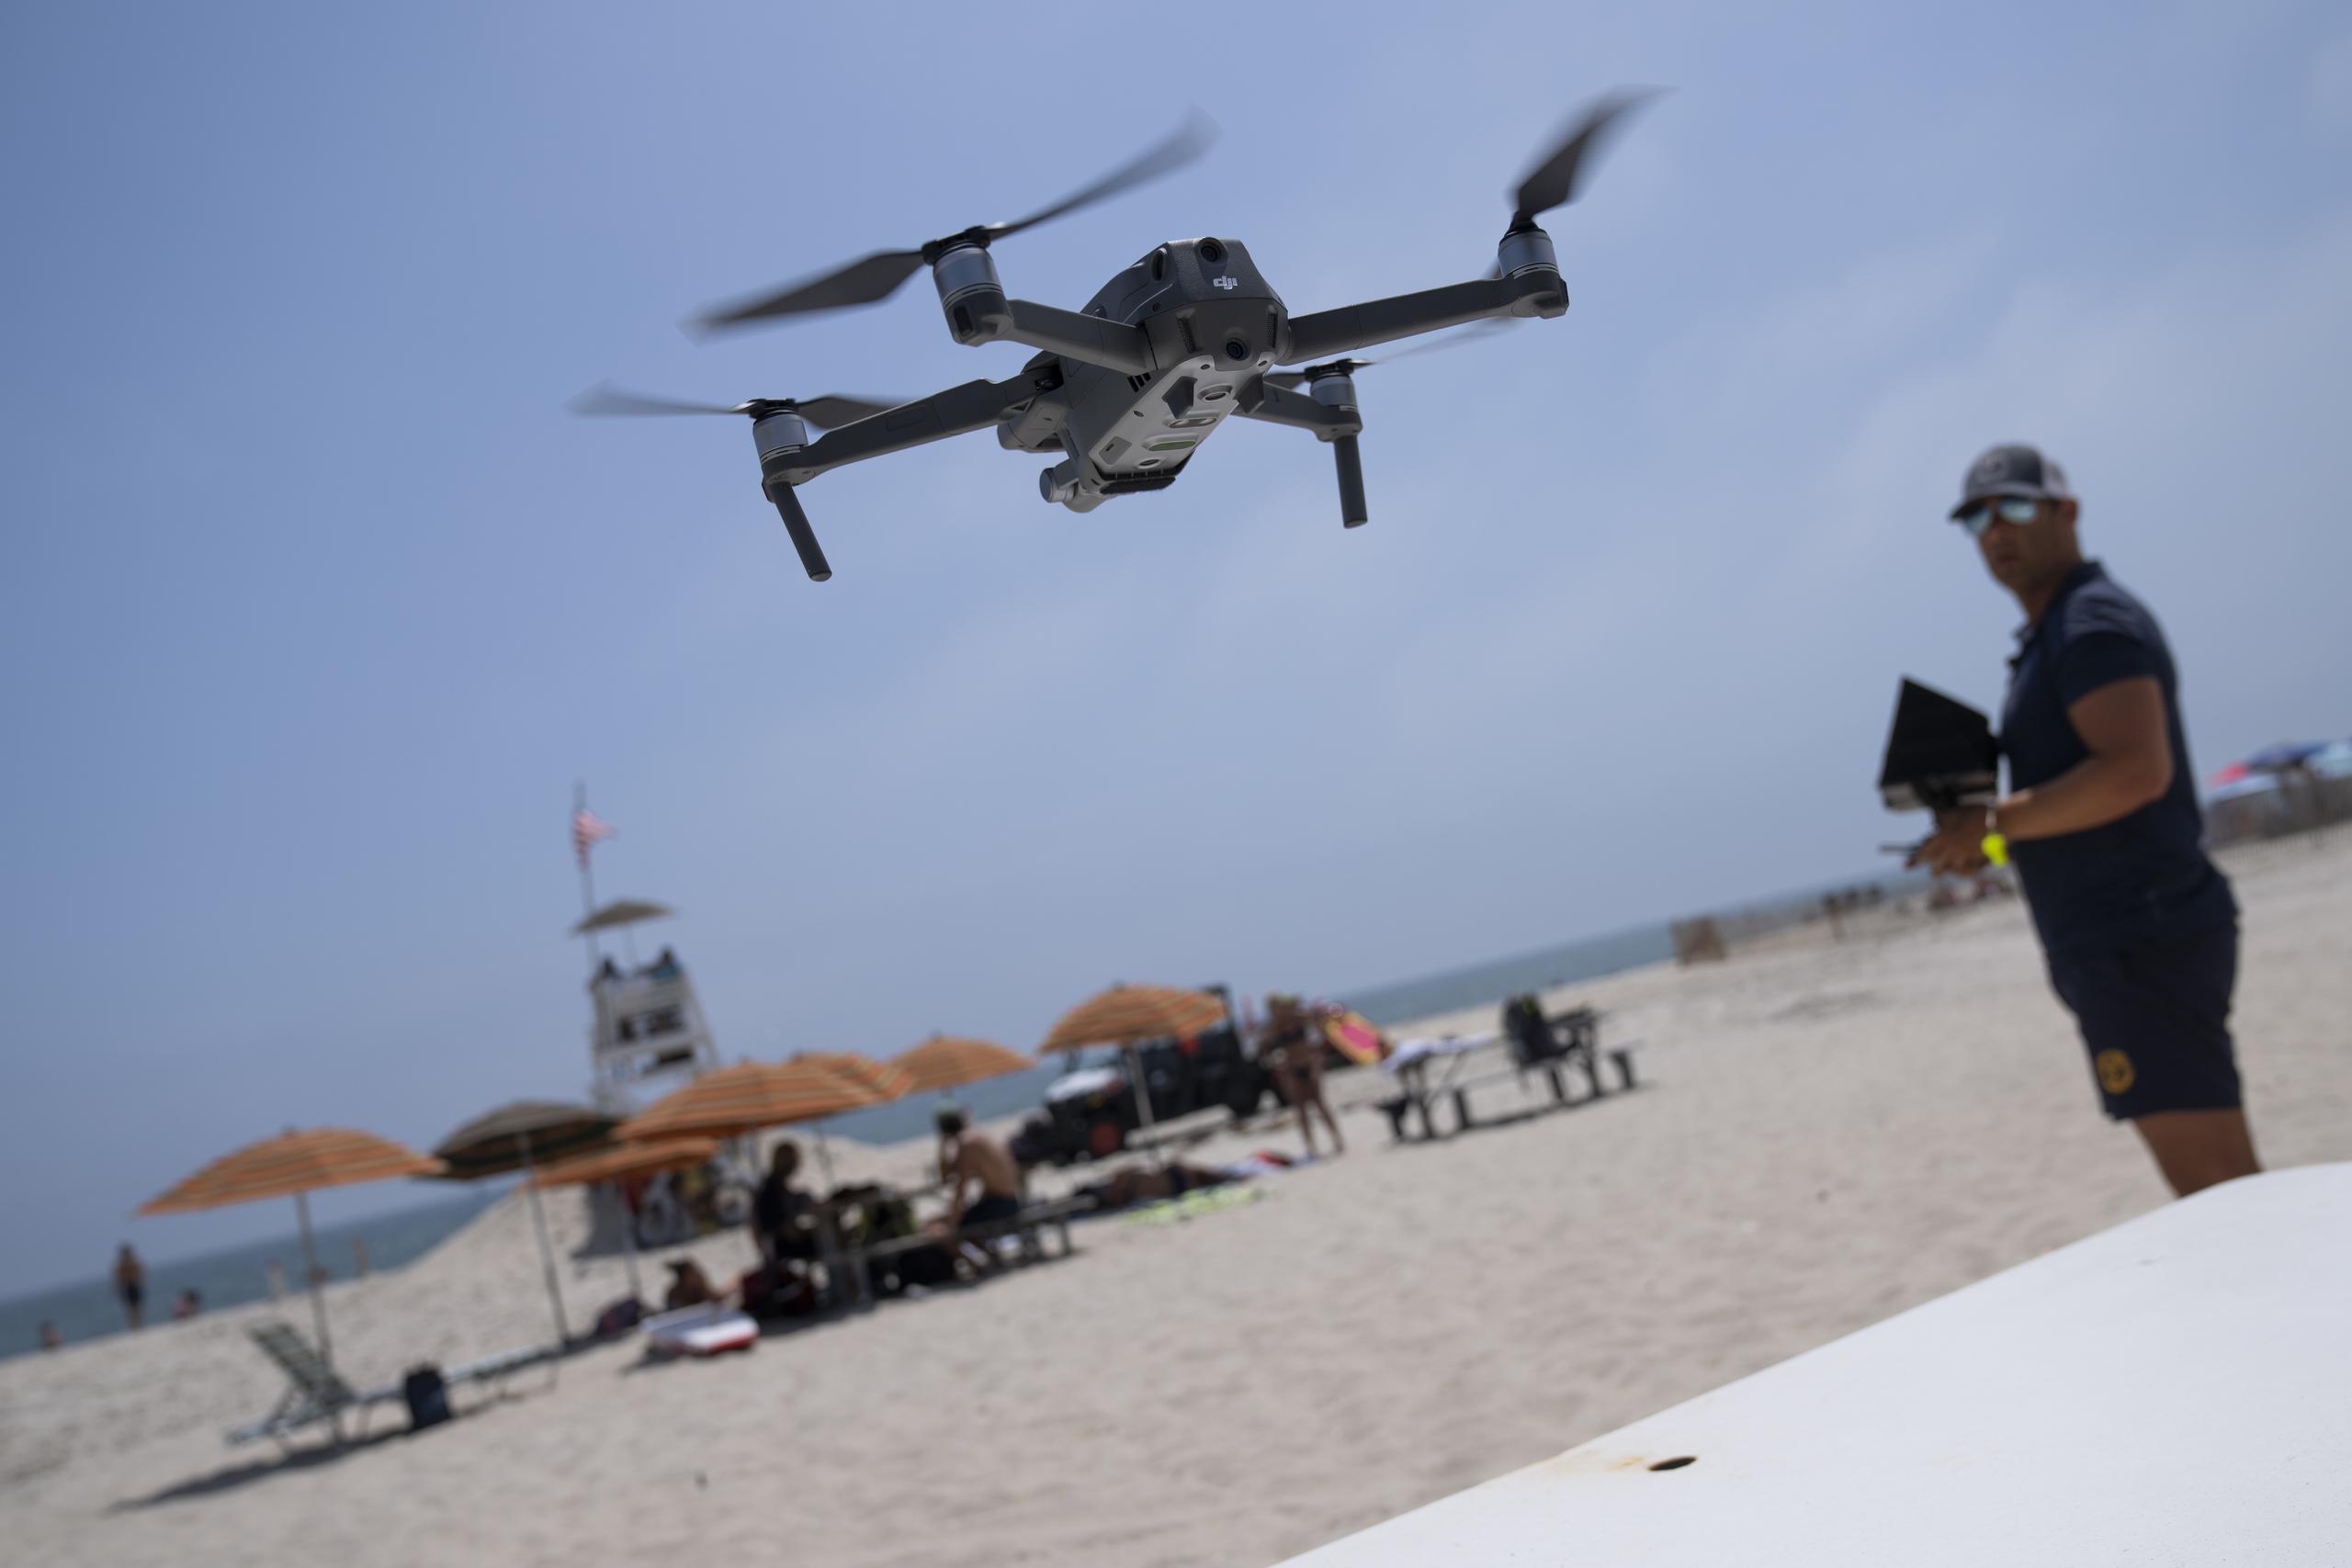 Las autoridades aseguraron que las imágenes del dron brindan a los salvavidas y administradores de parques una visibilidad aún mayor de la que tendrían desde sus puestos.